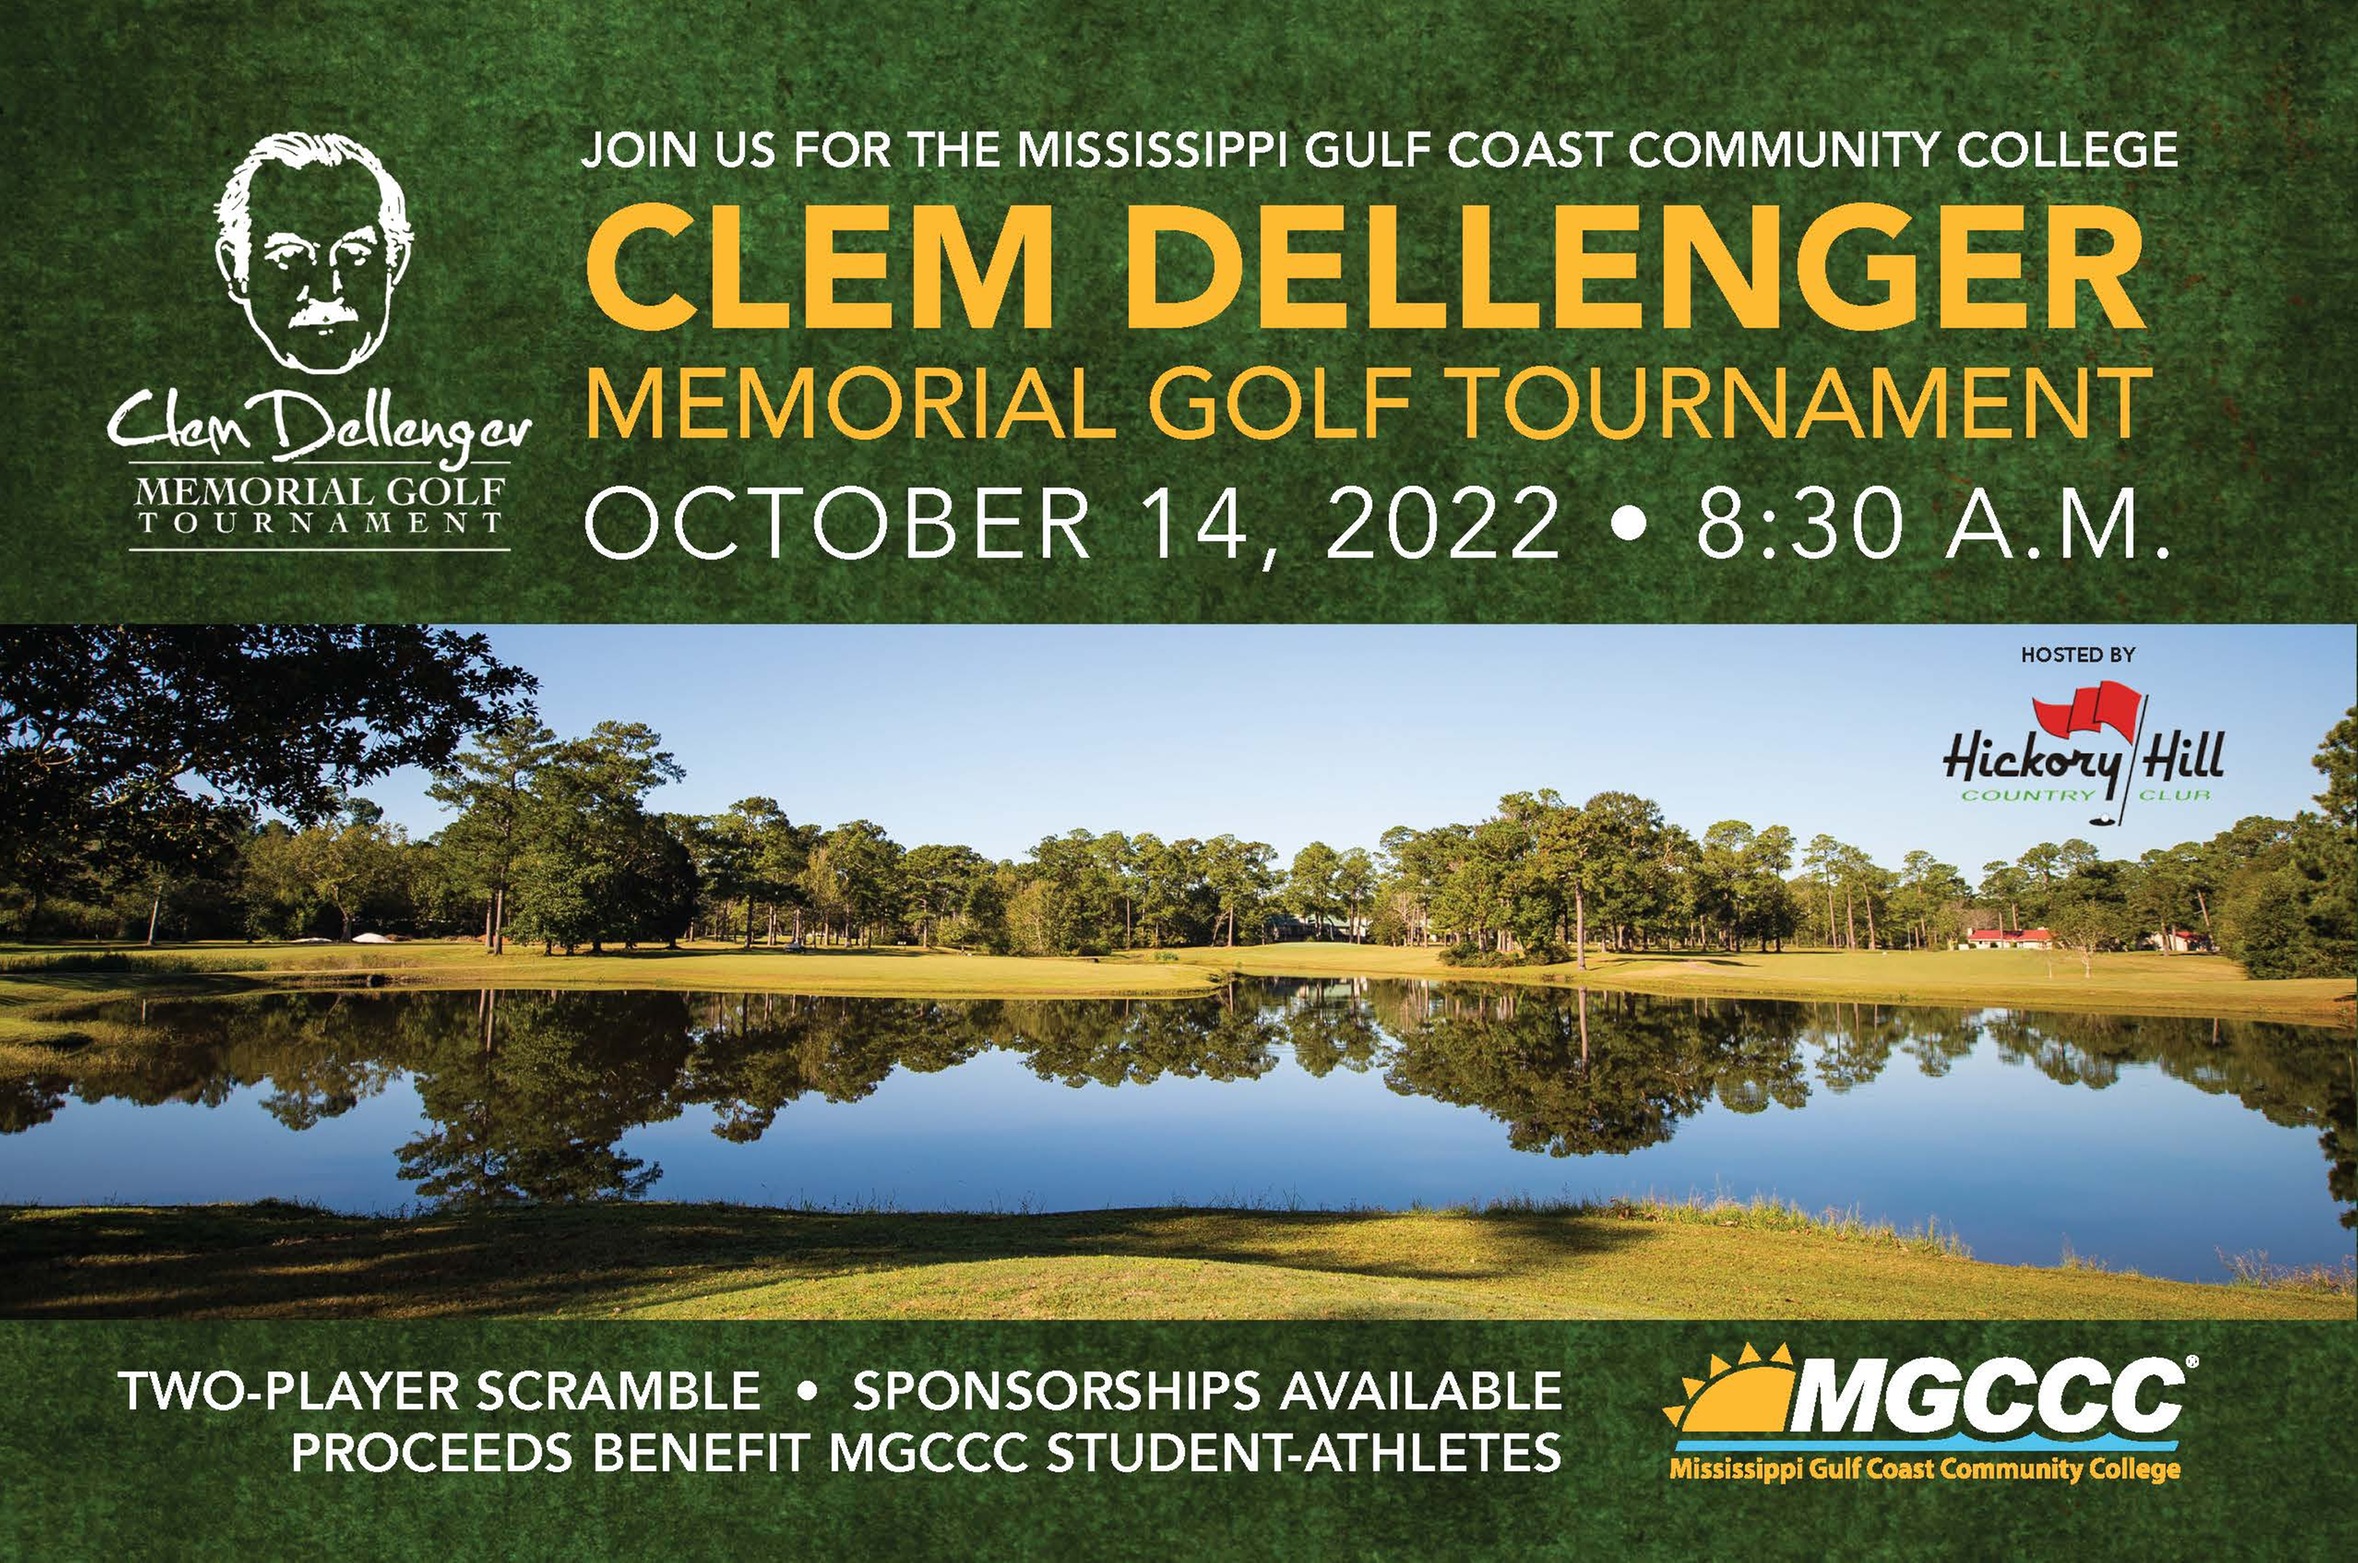 Clem Dellenger Tourney set for Oct. 14